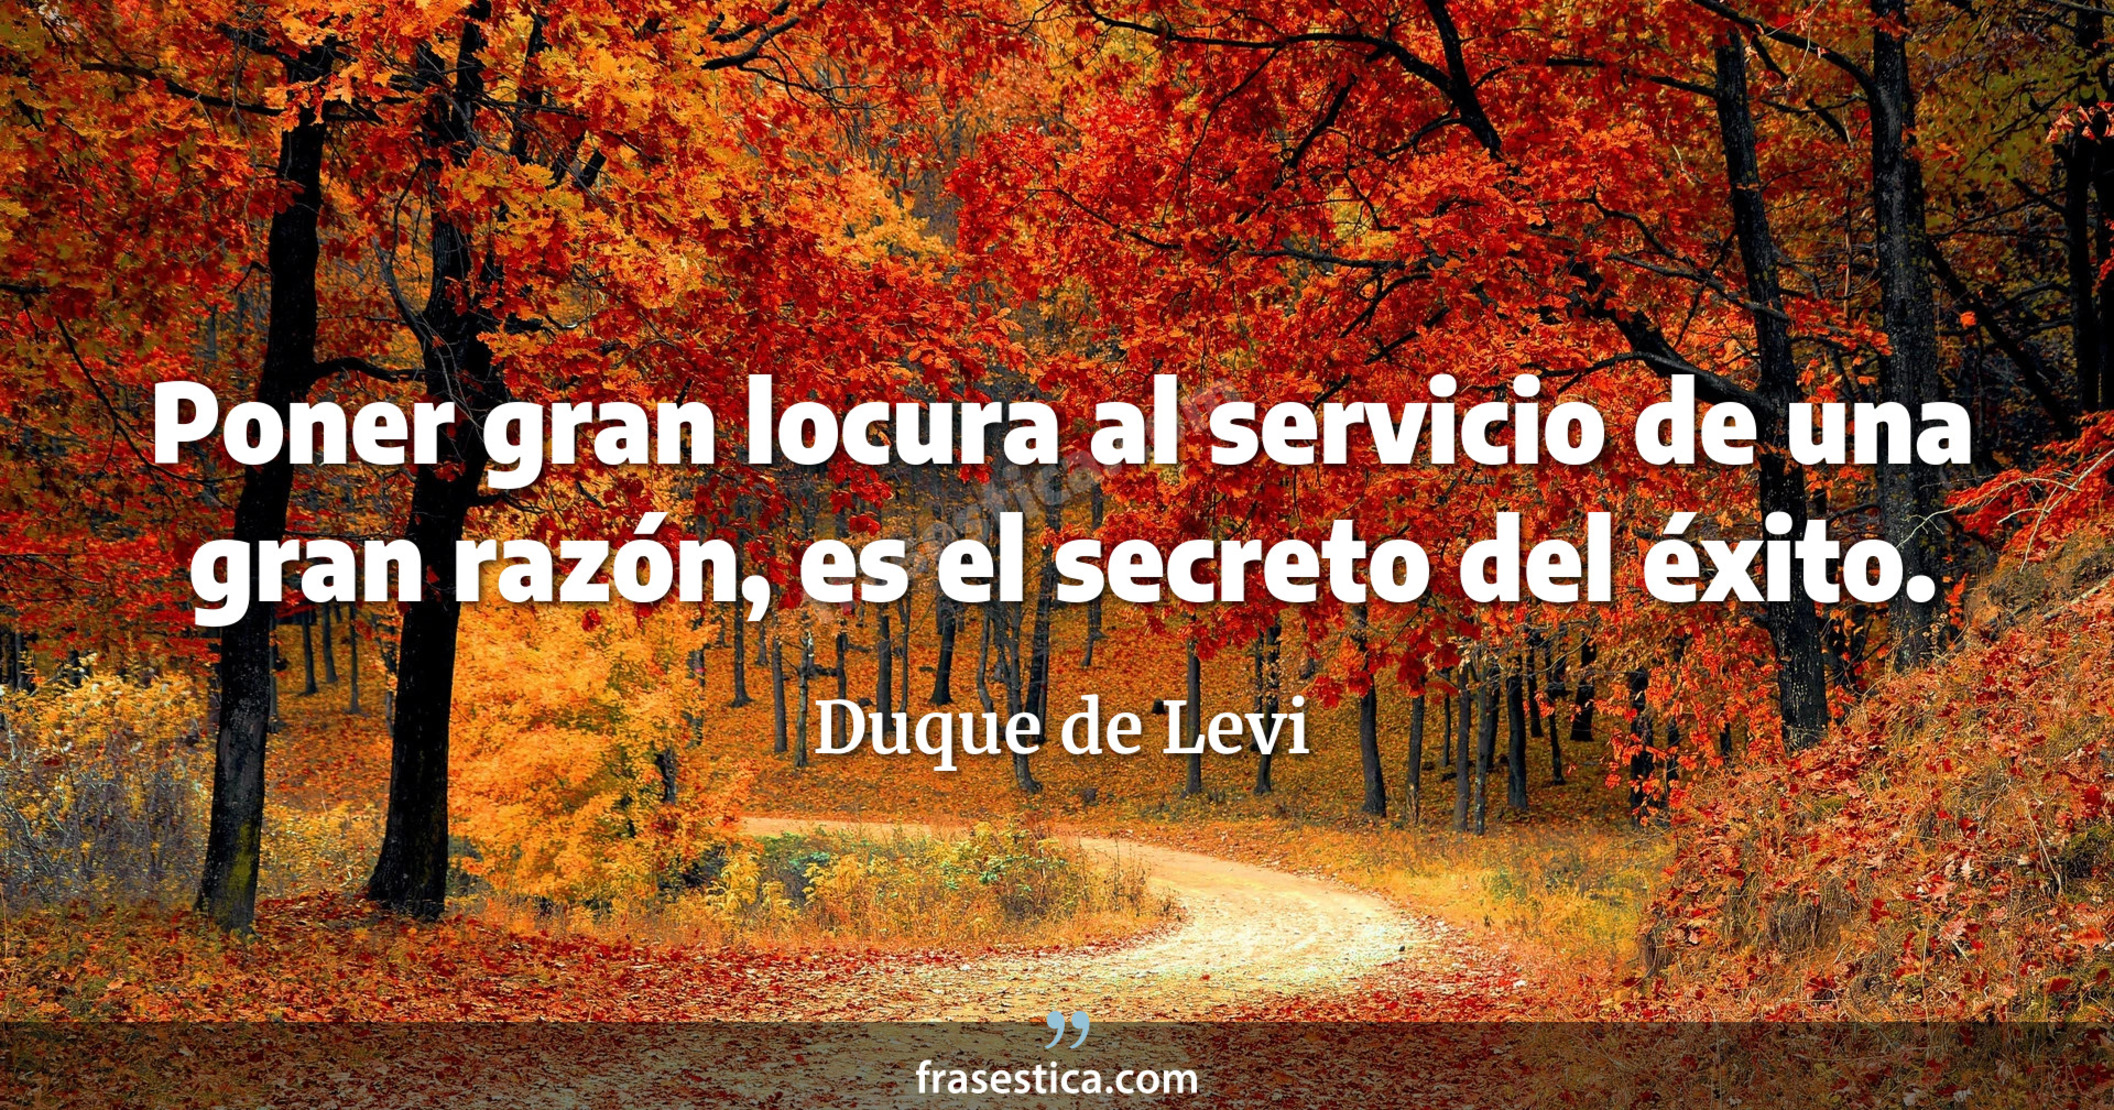 Poner gran locura al servicio de una gran razón, es el secreto del éxito. - Duque de Levi